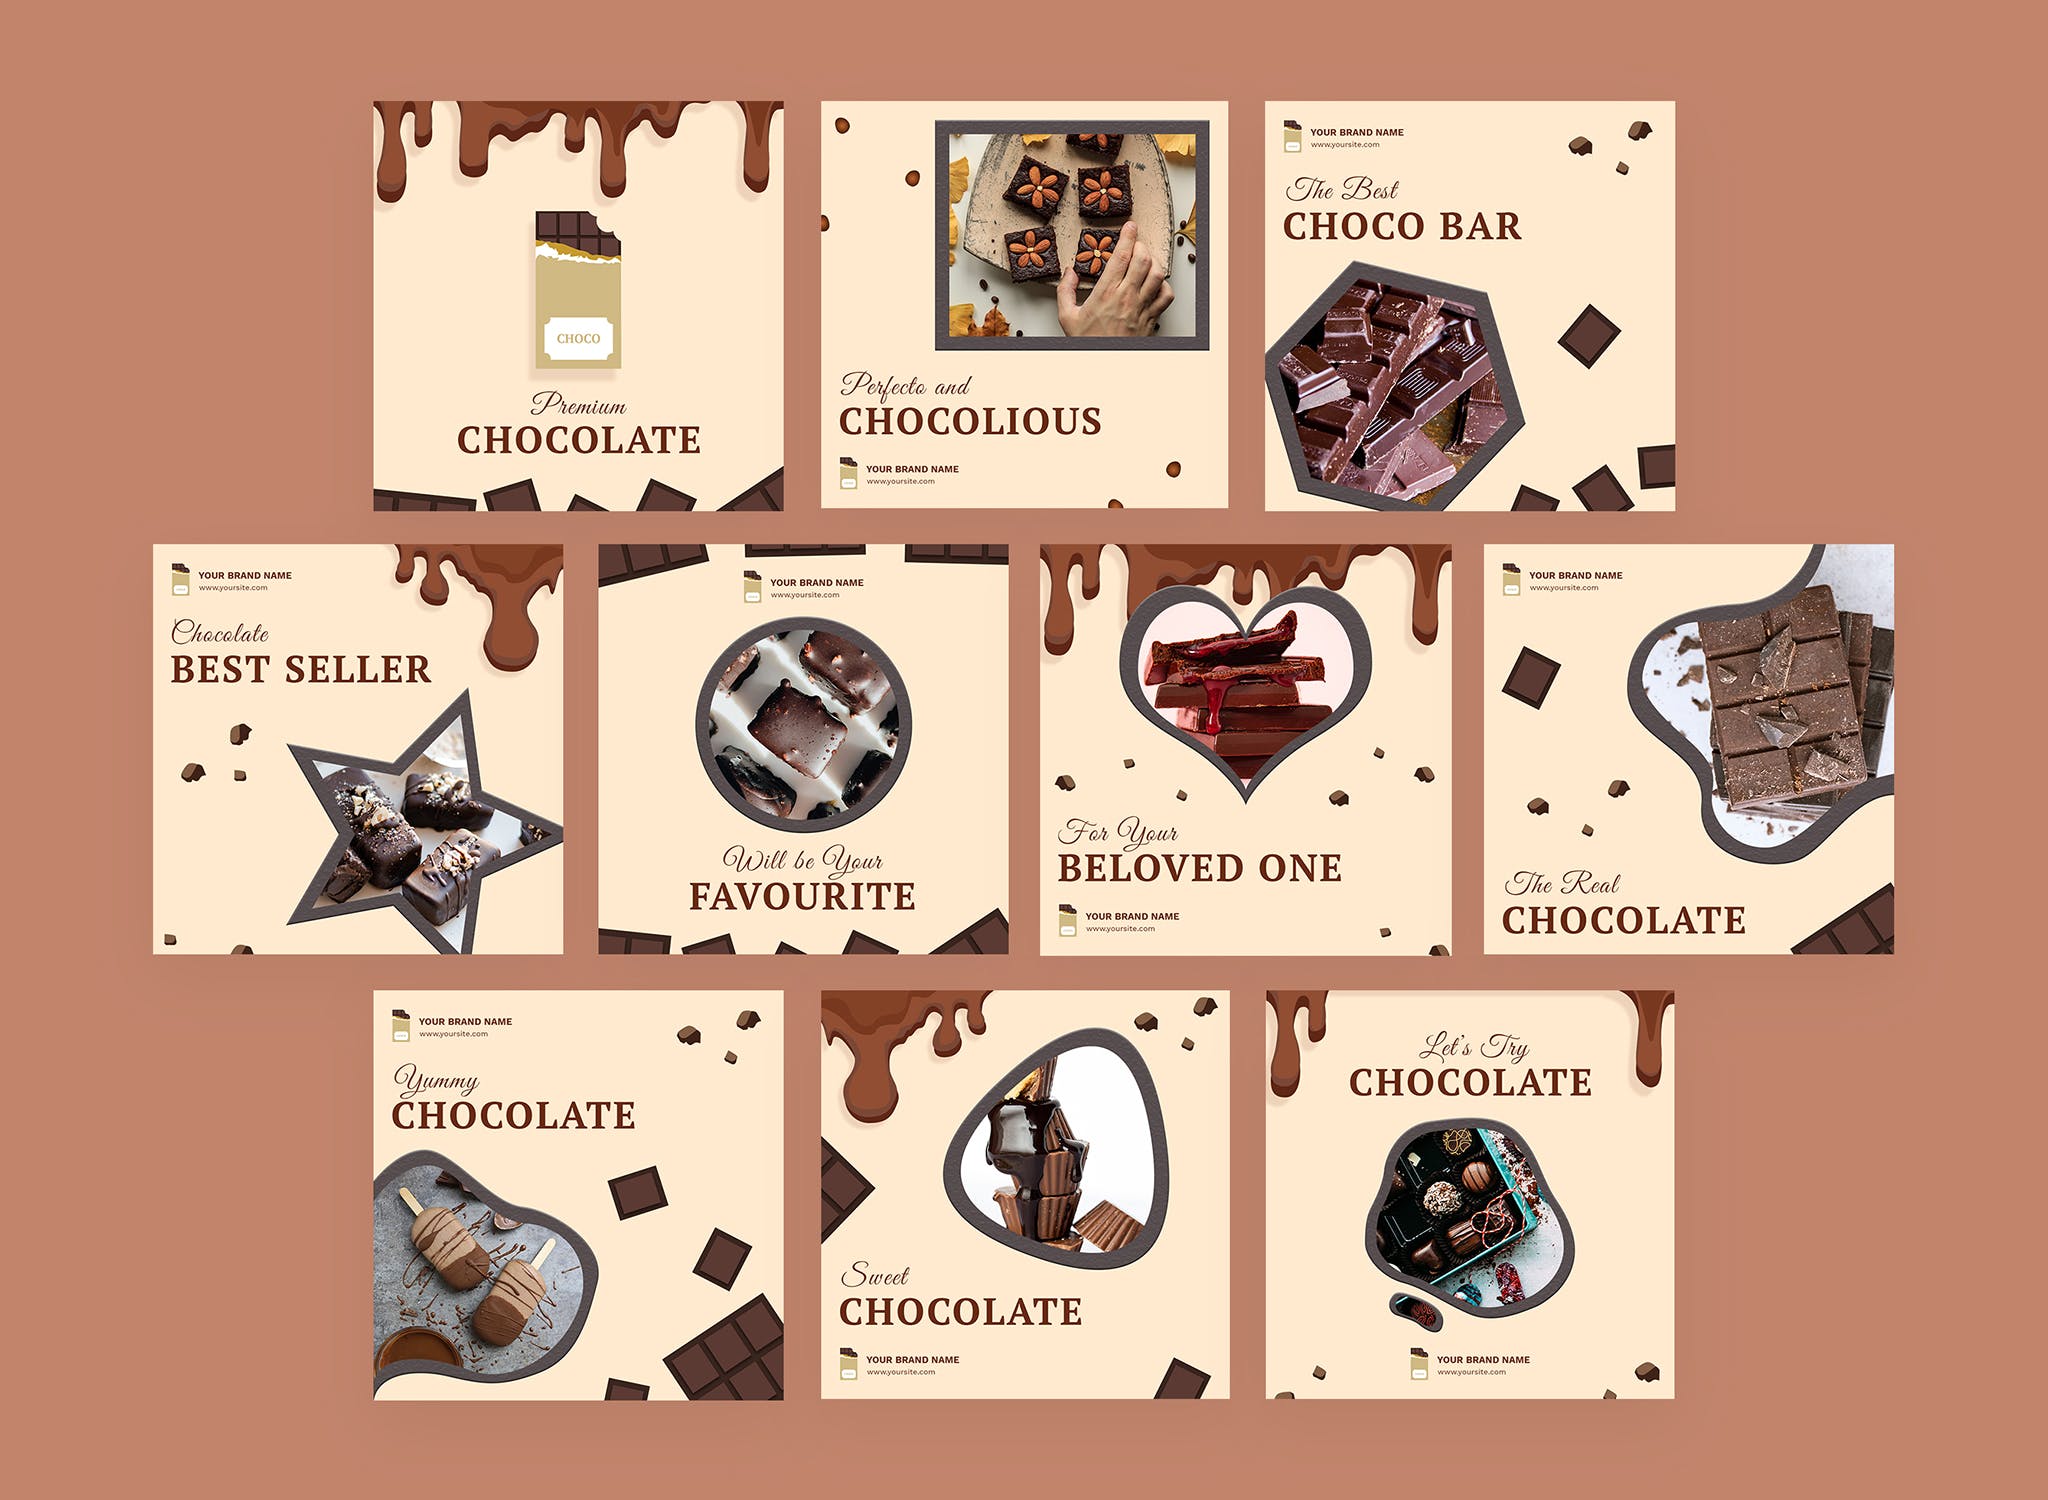 巧克力品牌营销Instagram社交信息流广告模板非凡图库精选 Cioccolato – Instagram Feeds Pack插图(1)